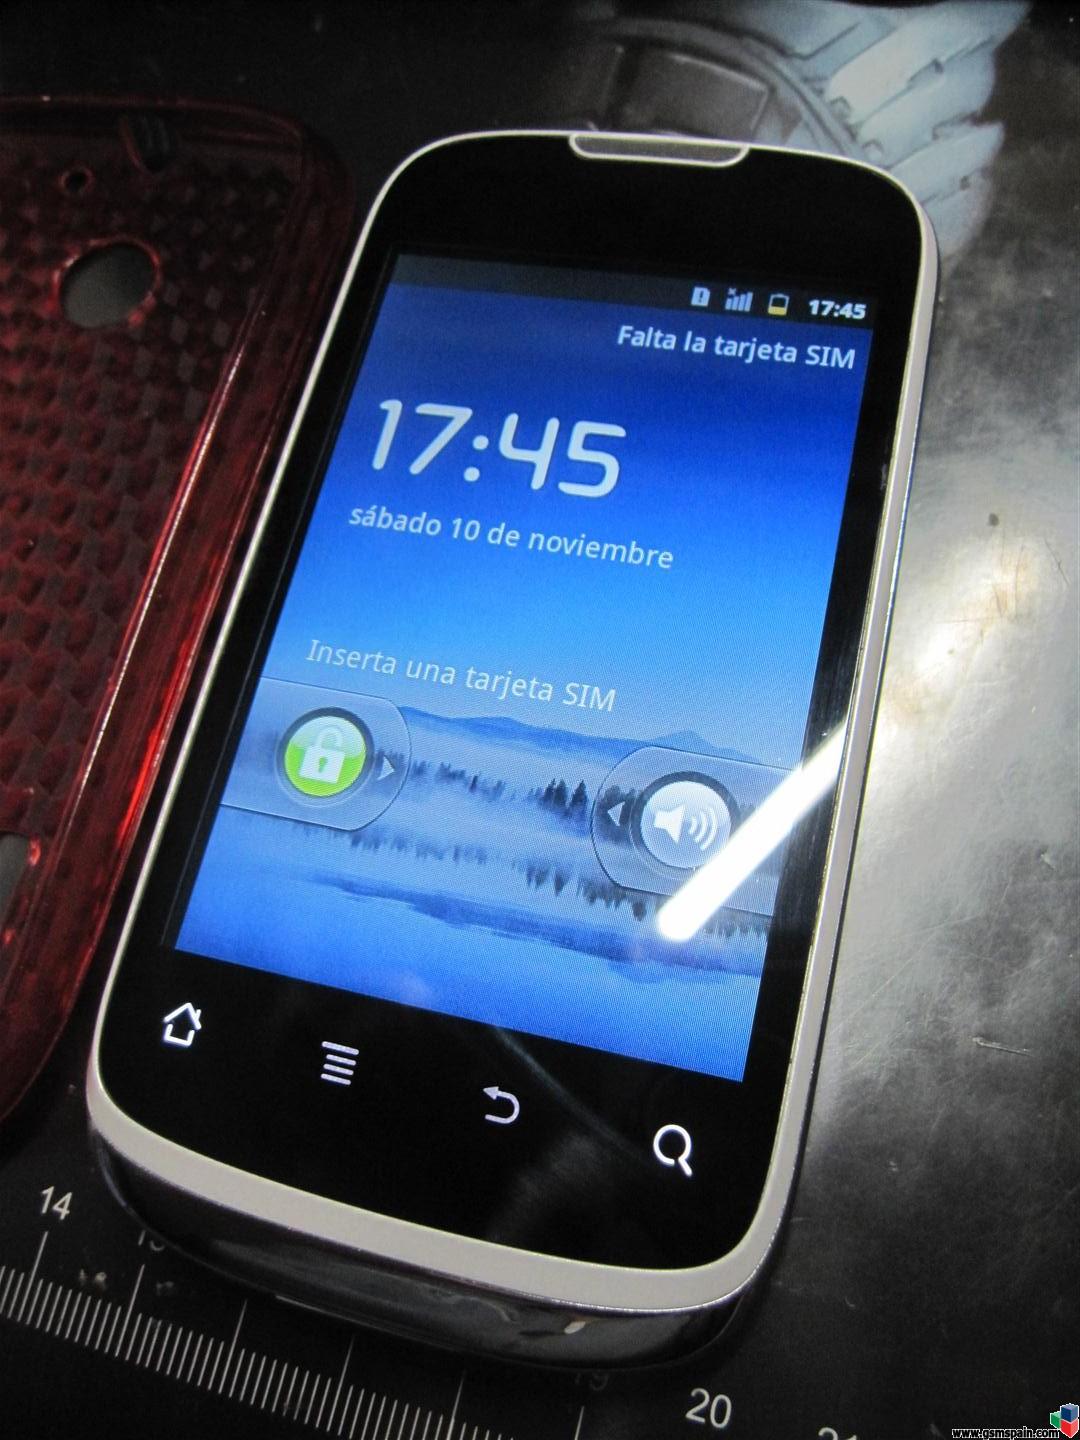 [VENDO] Huawei U8650 Blanco Libre en su caja, con factura y funda regalo.Android baratito !!